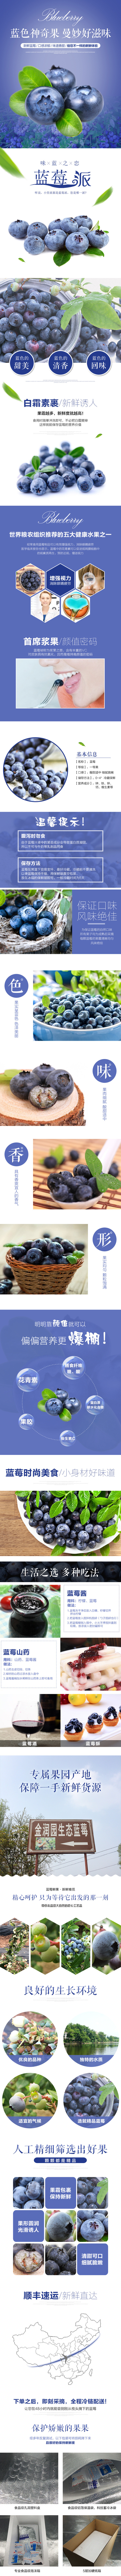 淘宝美工小远方休息食品 蓝莓 绿色有机水果 健康 新鲜 水果详情页作品